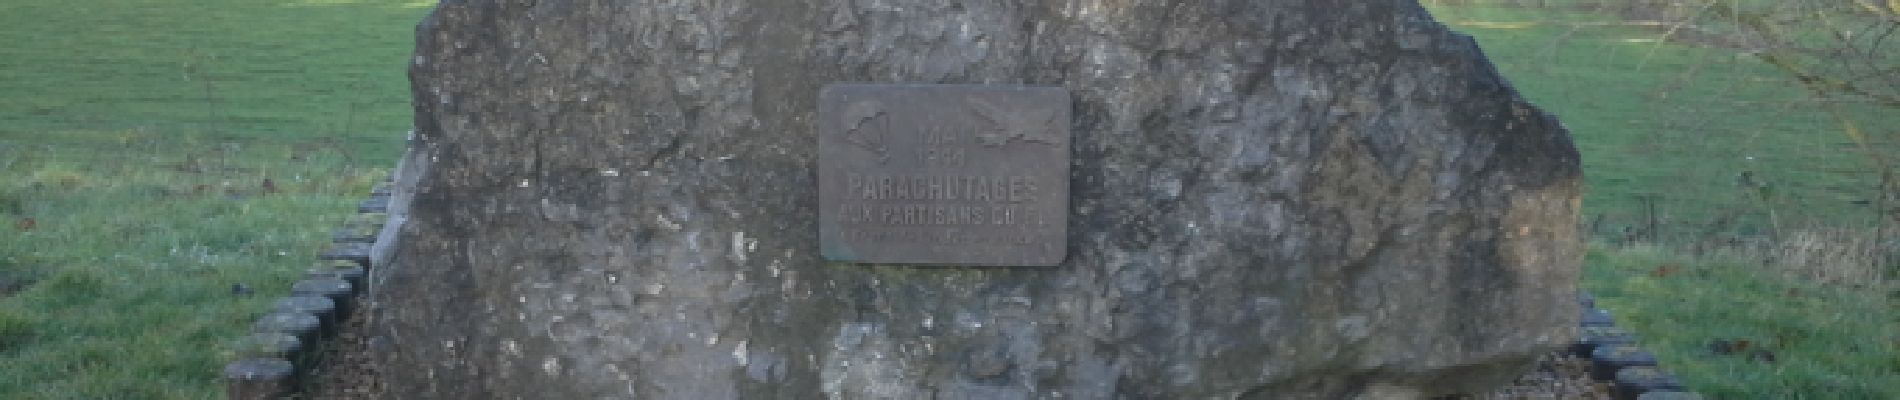 Point d'intérêt Hotton - Monument dédié aux parachutistes - Photo